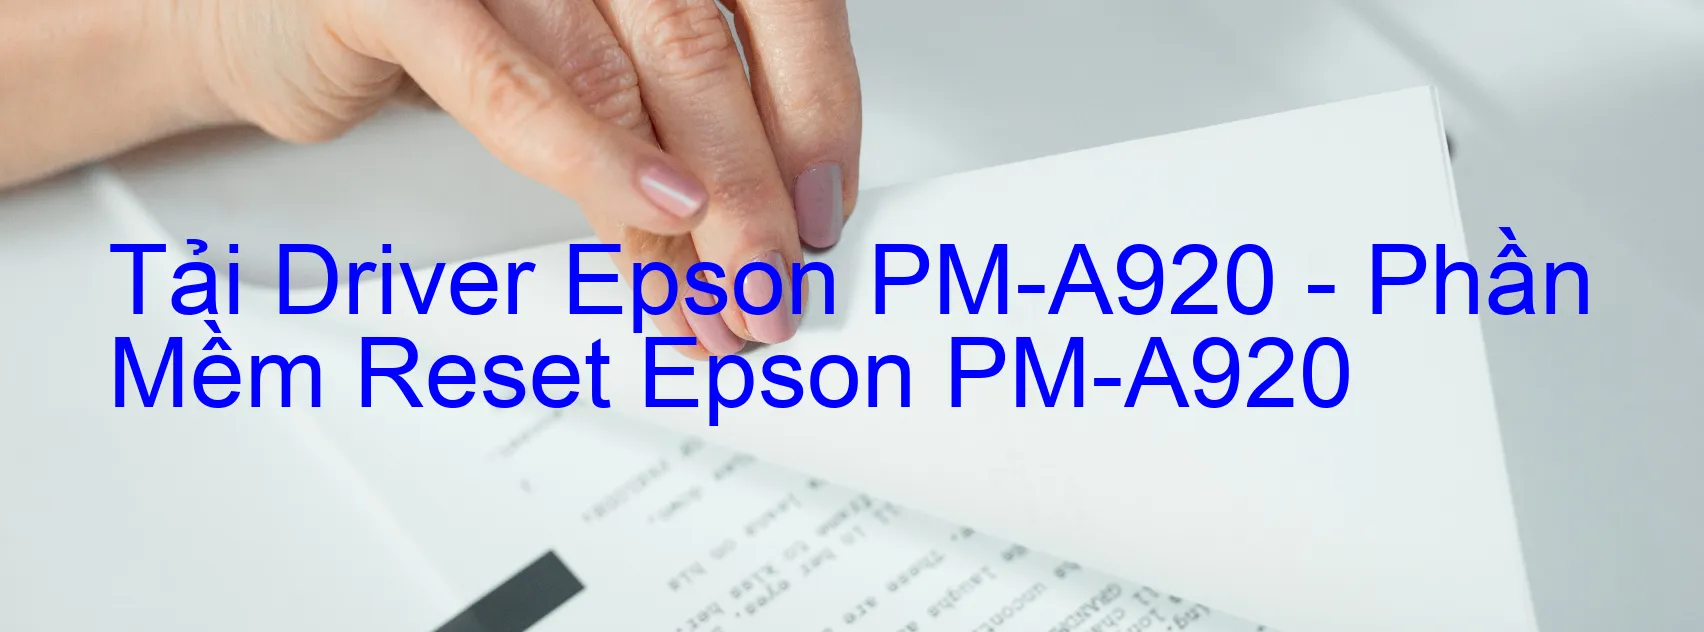 Driver Epson PM-A920, Phần Mềm Reset Epson PM-A920